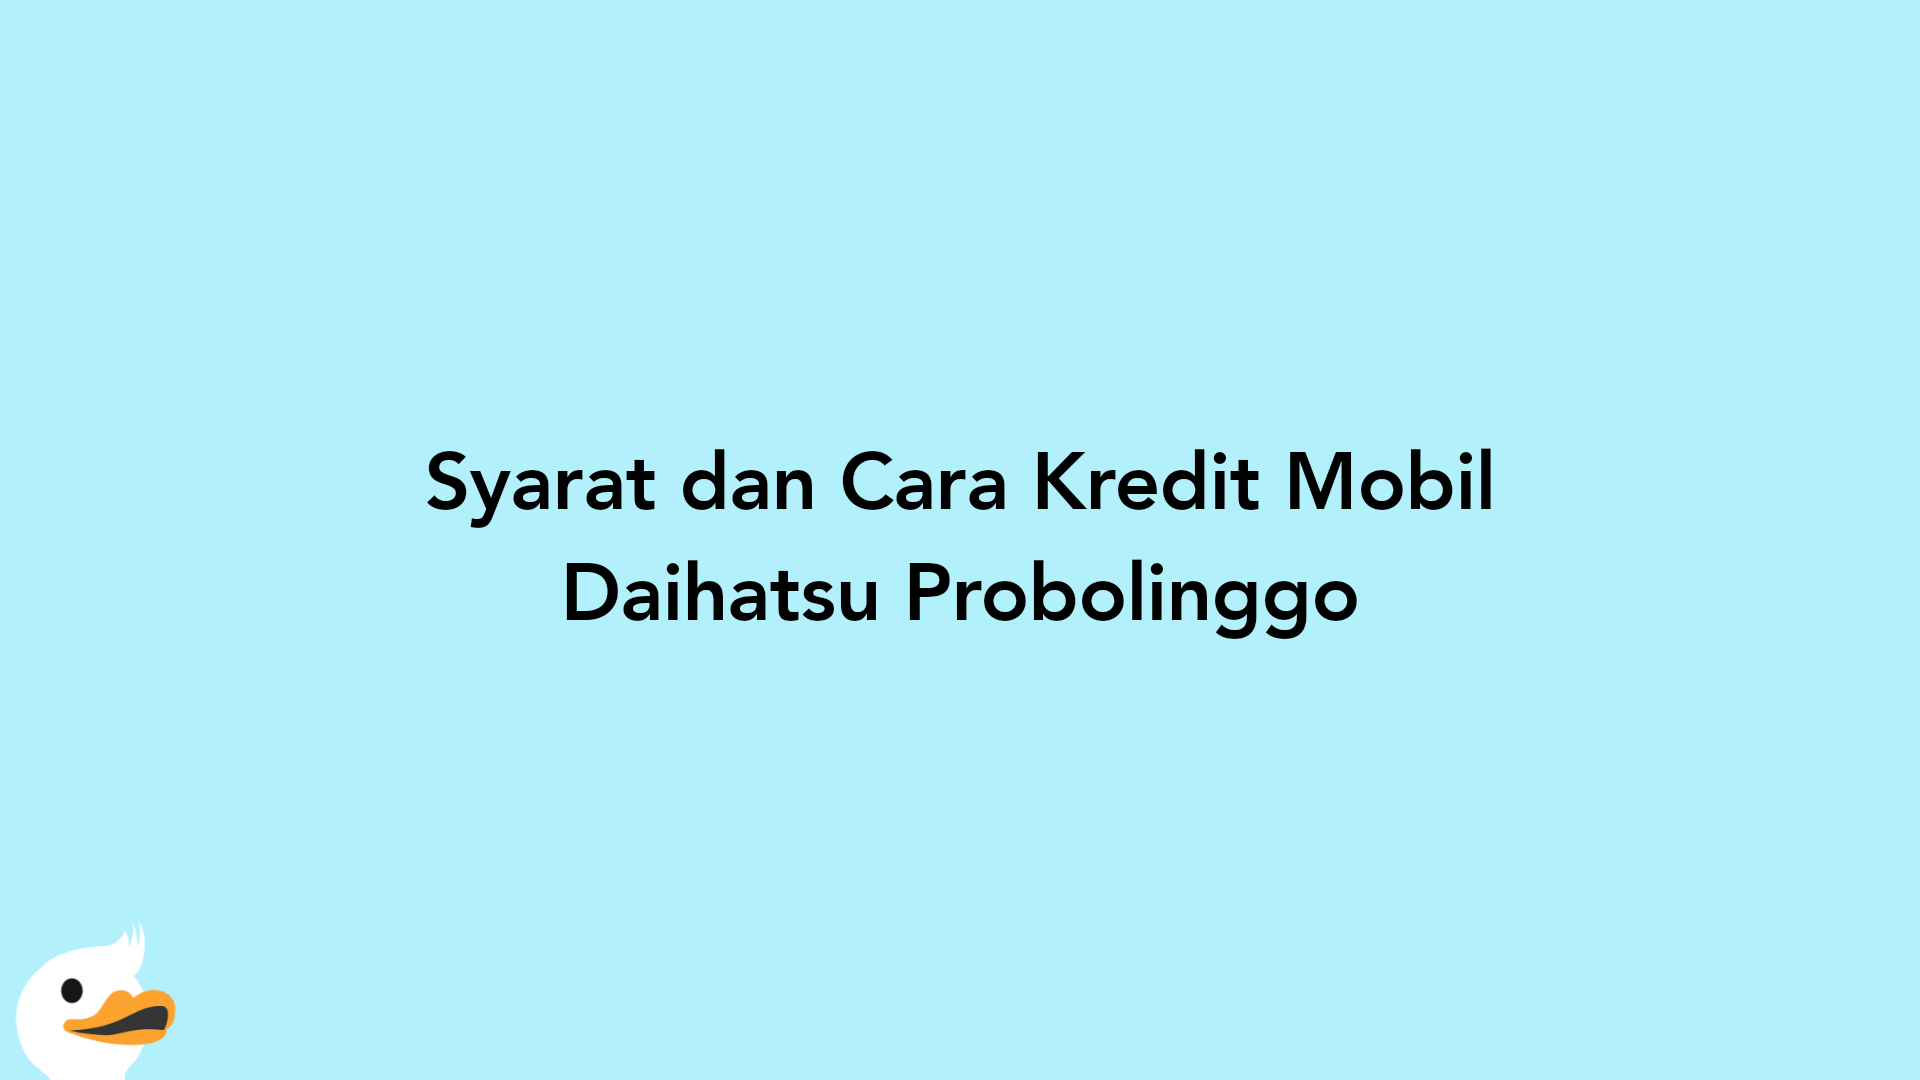 Syarat dan Cara Kredit Mobil Daihatsu Probolinggo